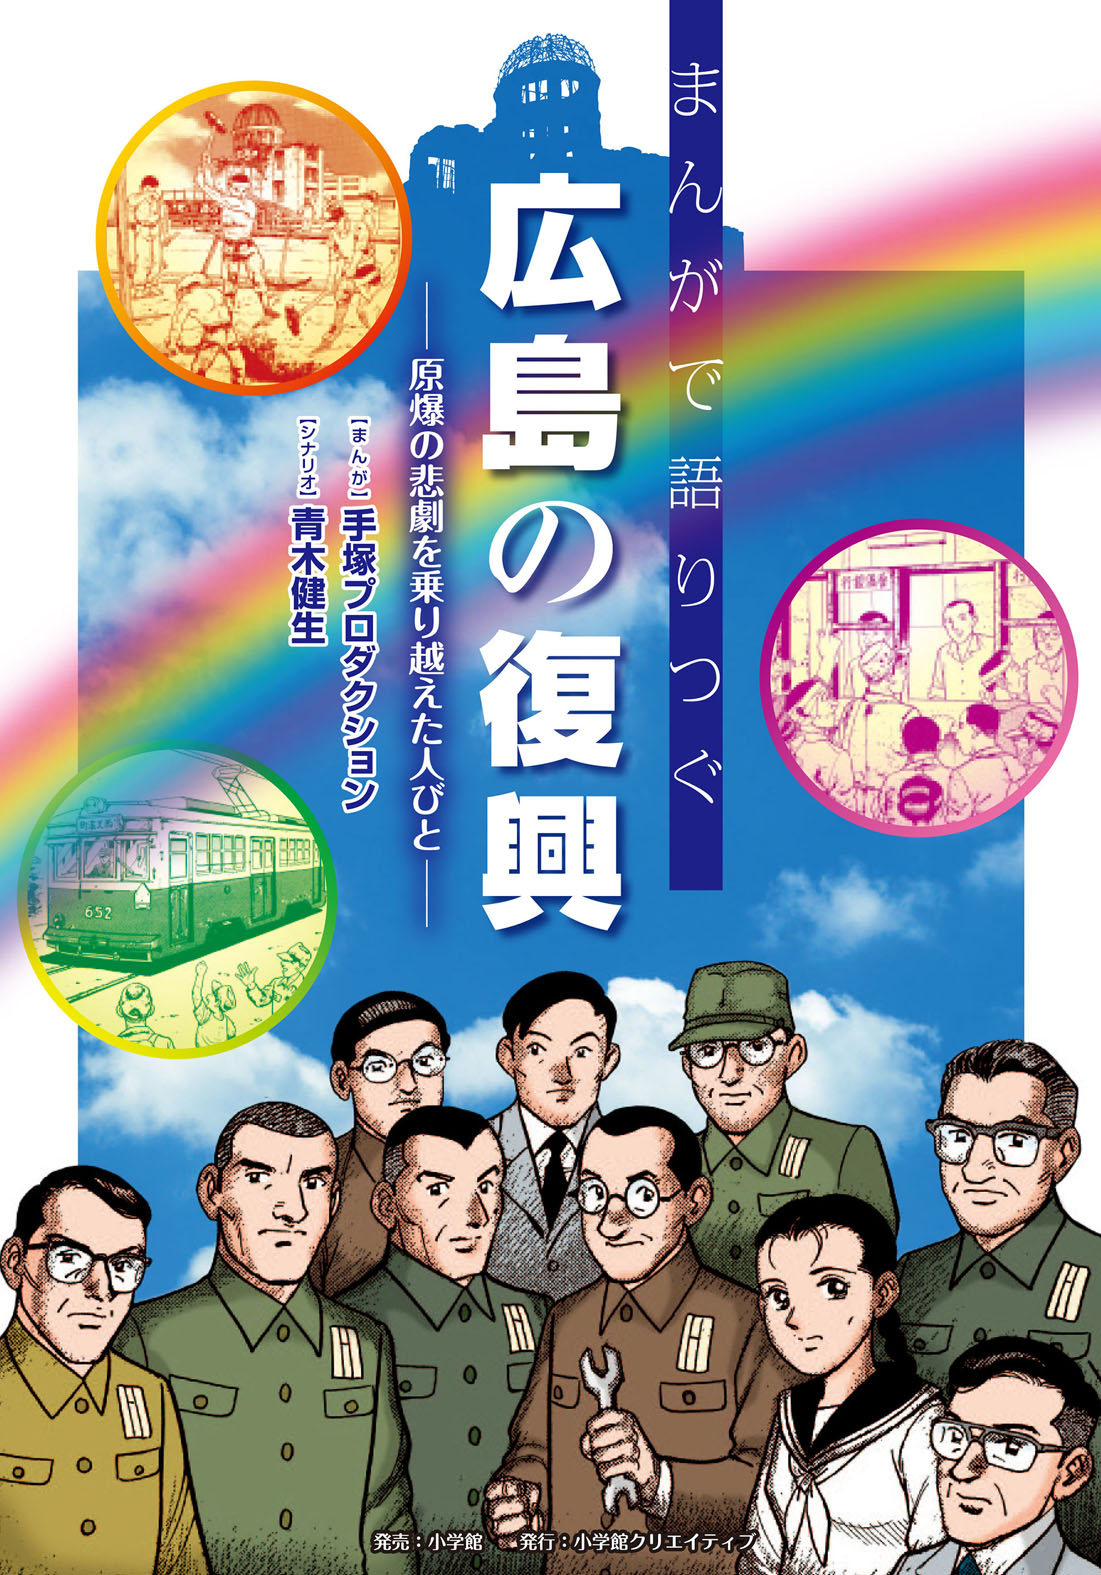 マツダ、広島県内の小学校および中学校に単行本「まんがで語りつぐ広島の復興」を寄贈